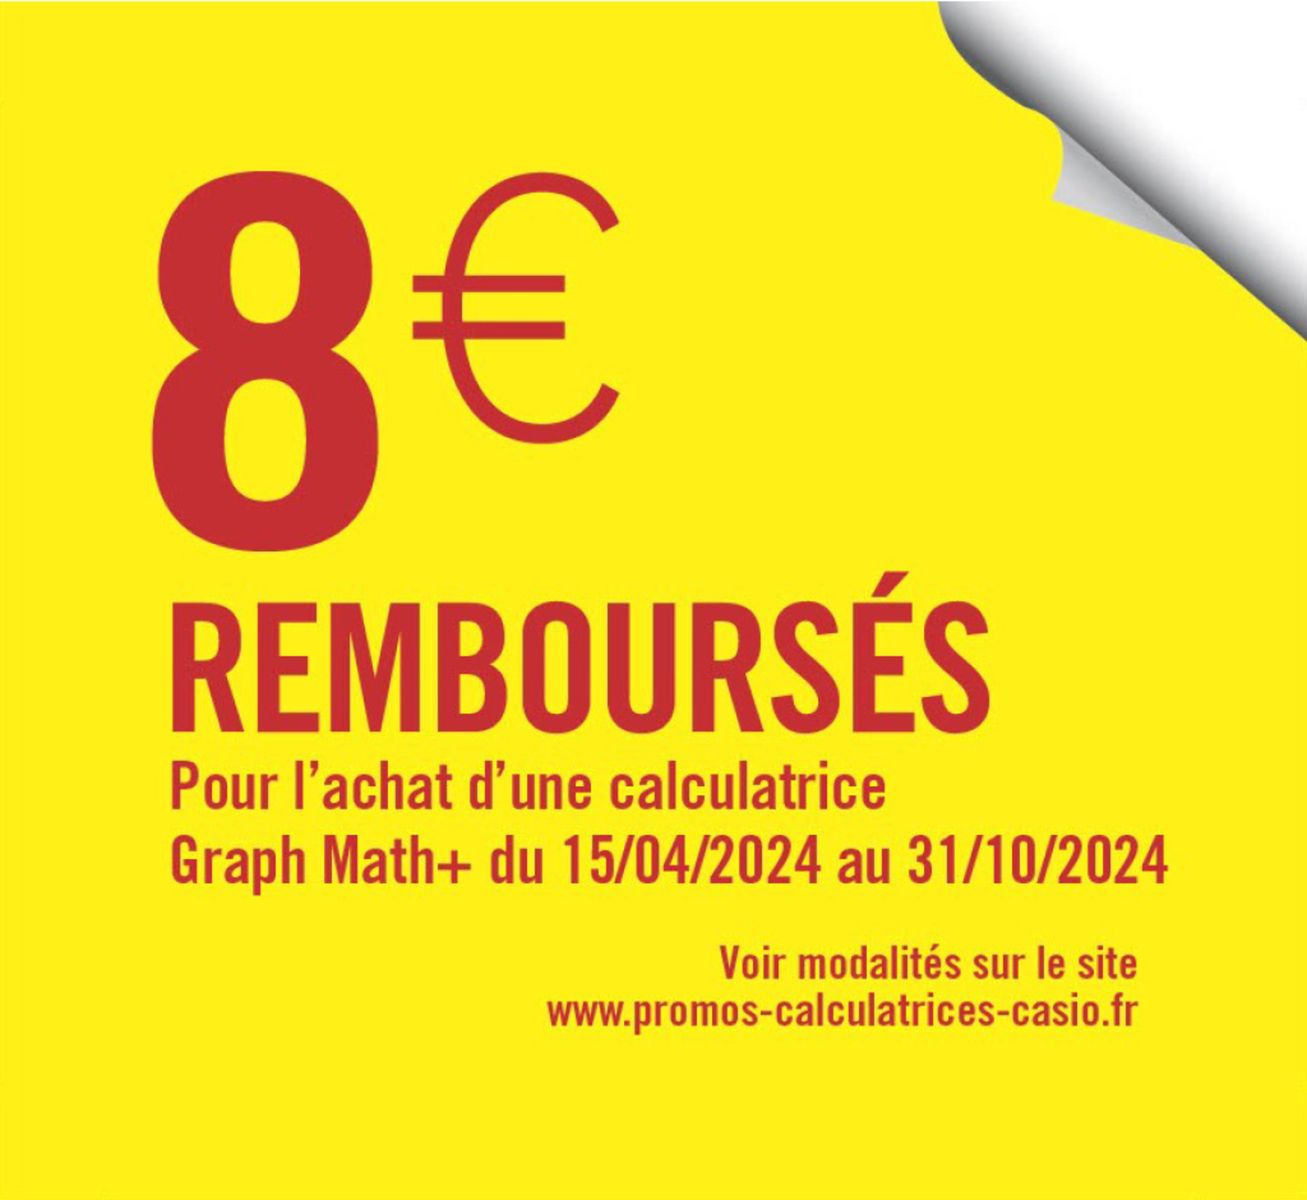 Catalogue 8€ REMBOURSÉS AVEC CASIO, page 00001